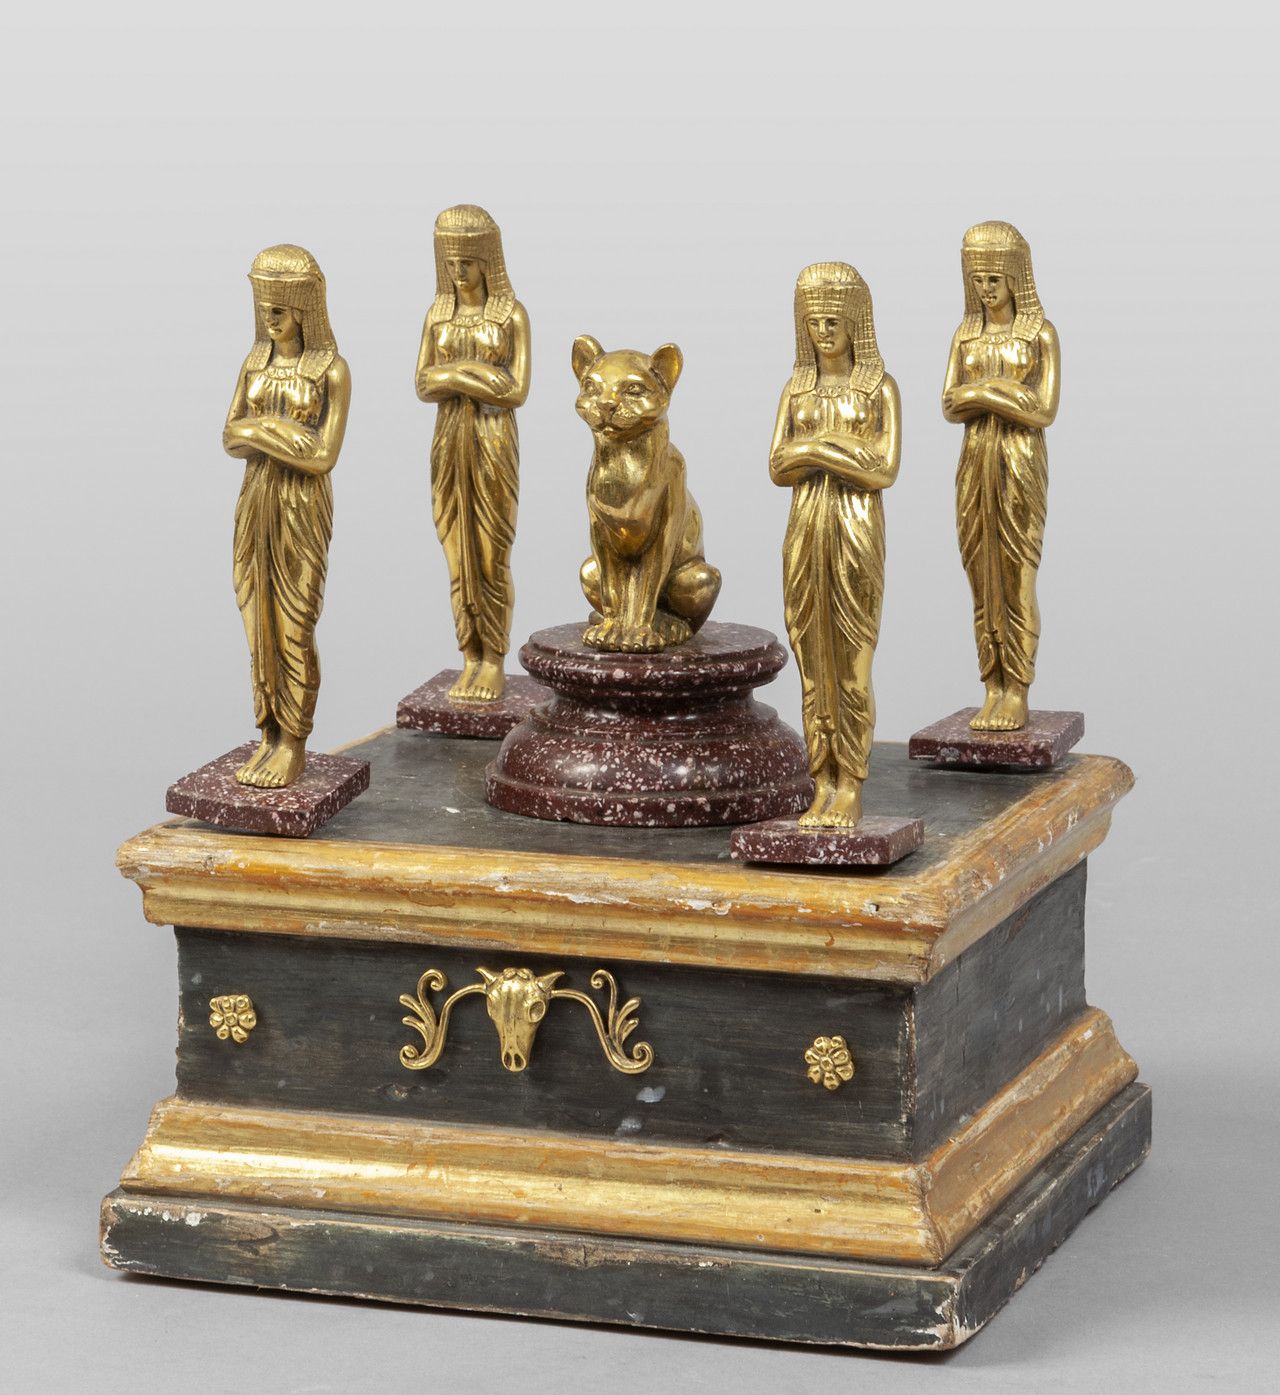 Tempietto di gusto egiziano con cinque figure in 埃及风格的神庙，有五个铜像，中央的铜像描绘的是一只猫，安装在斑&hellip;